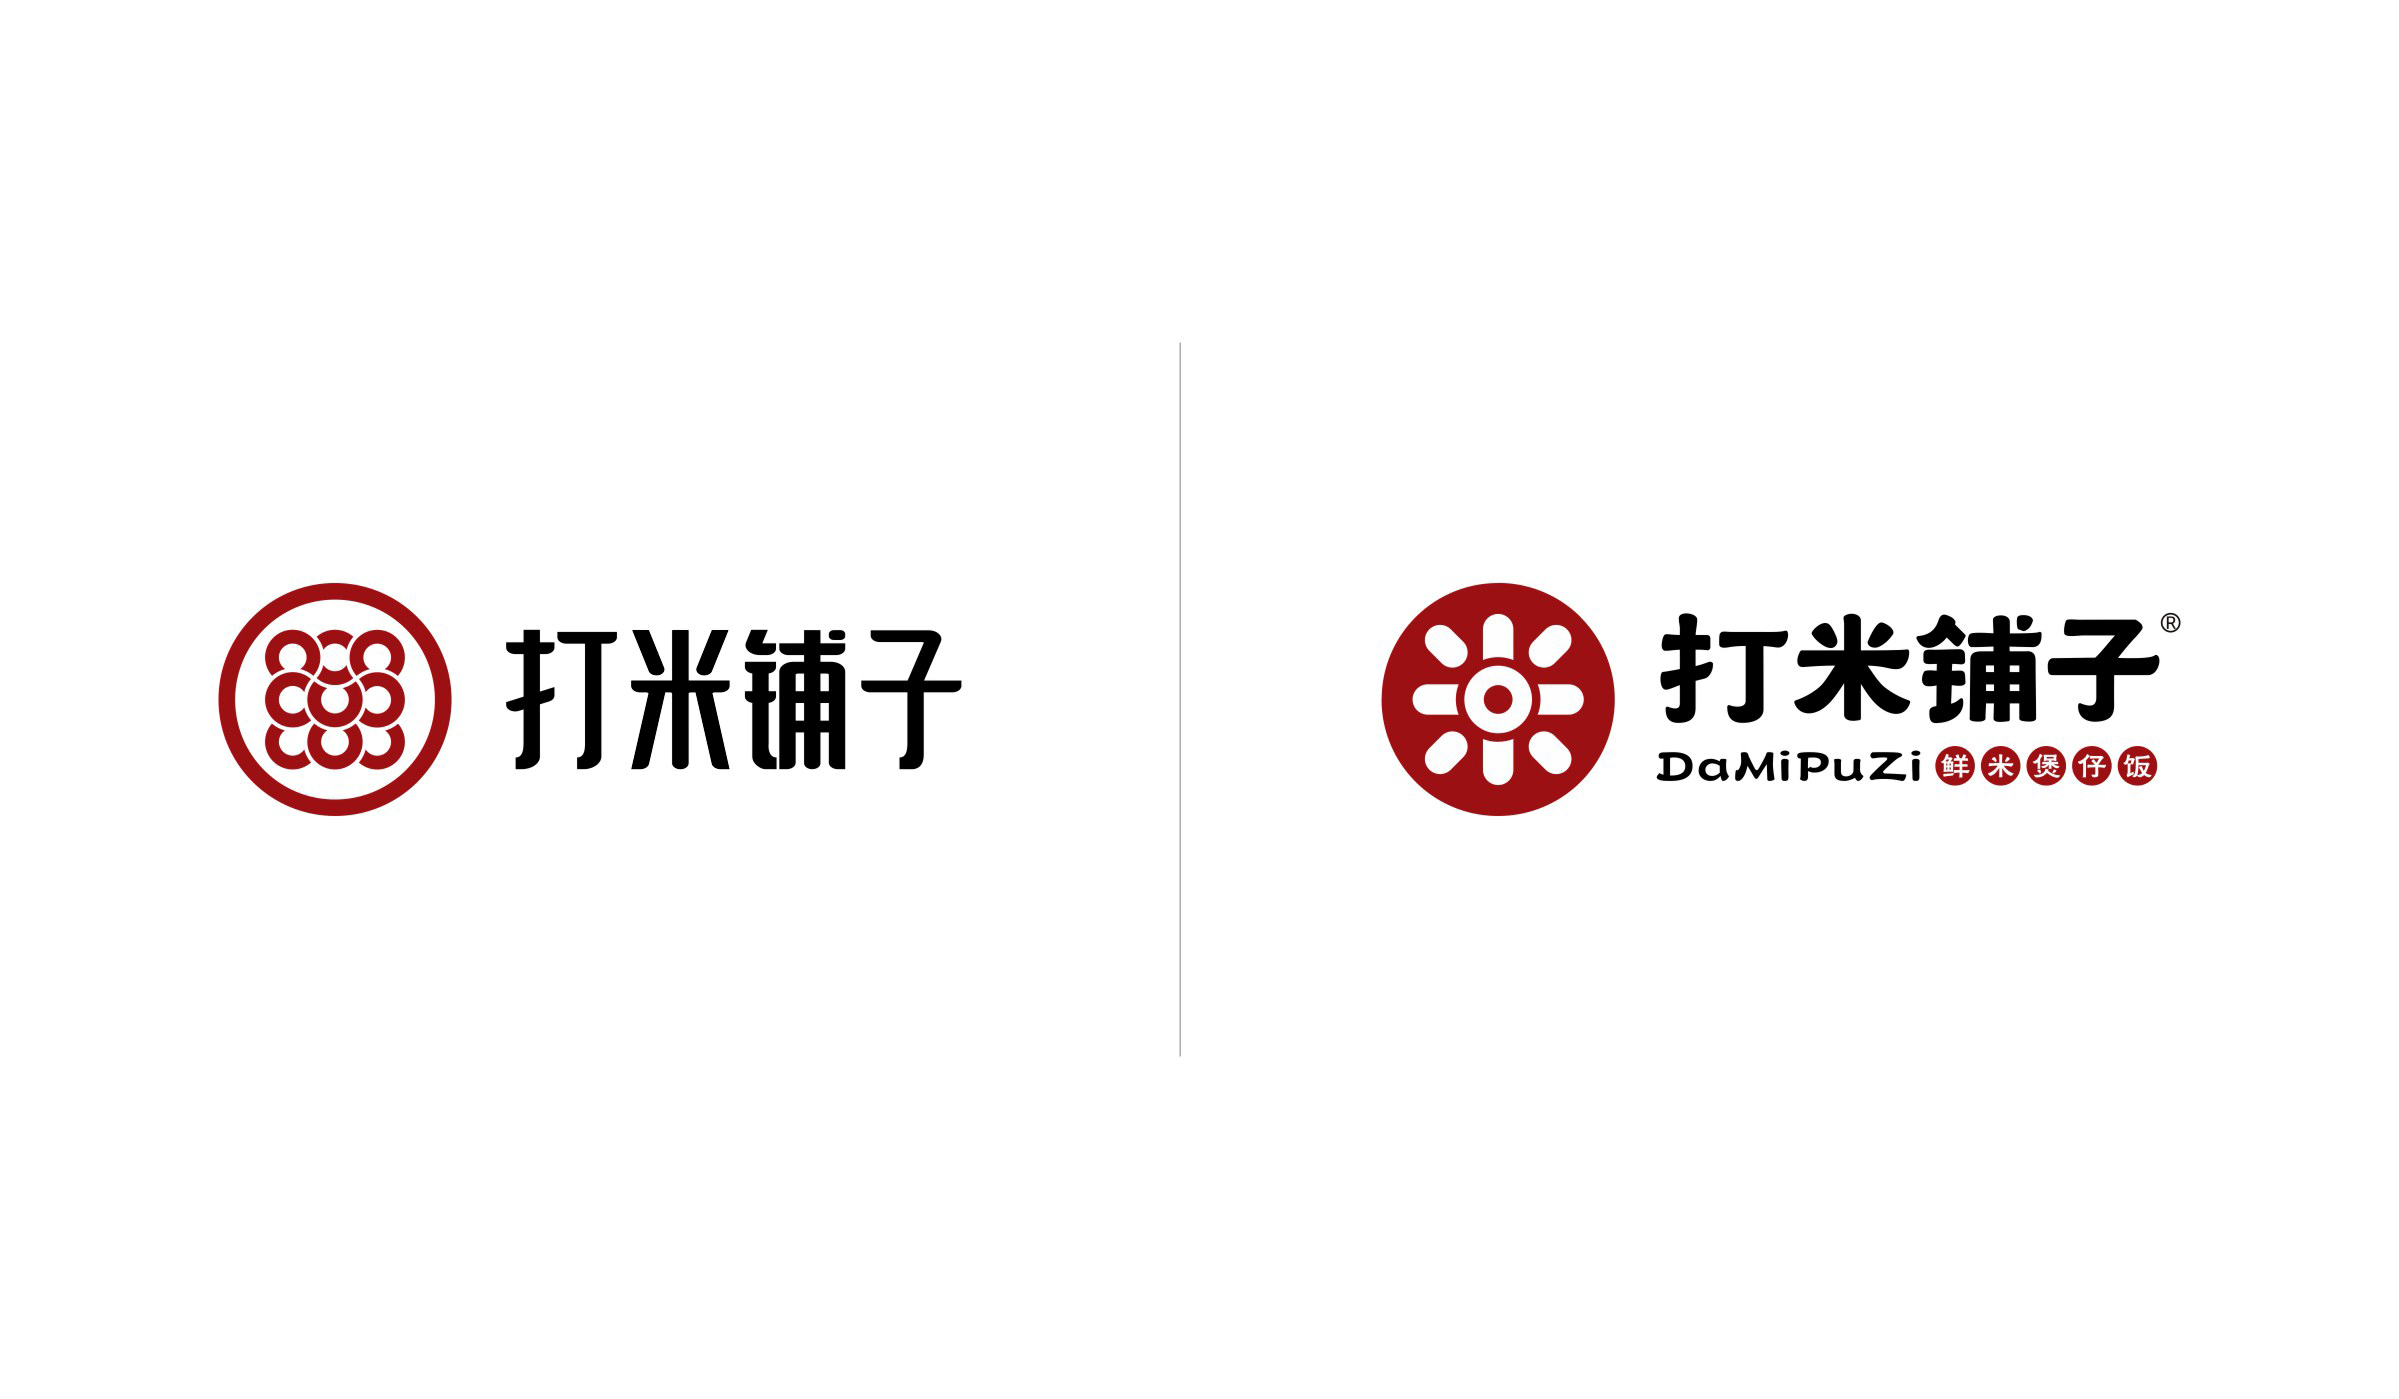 打米铺子品牌形象logo组合形式